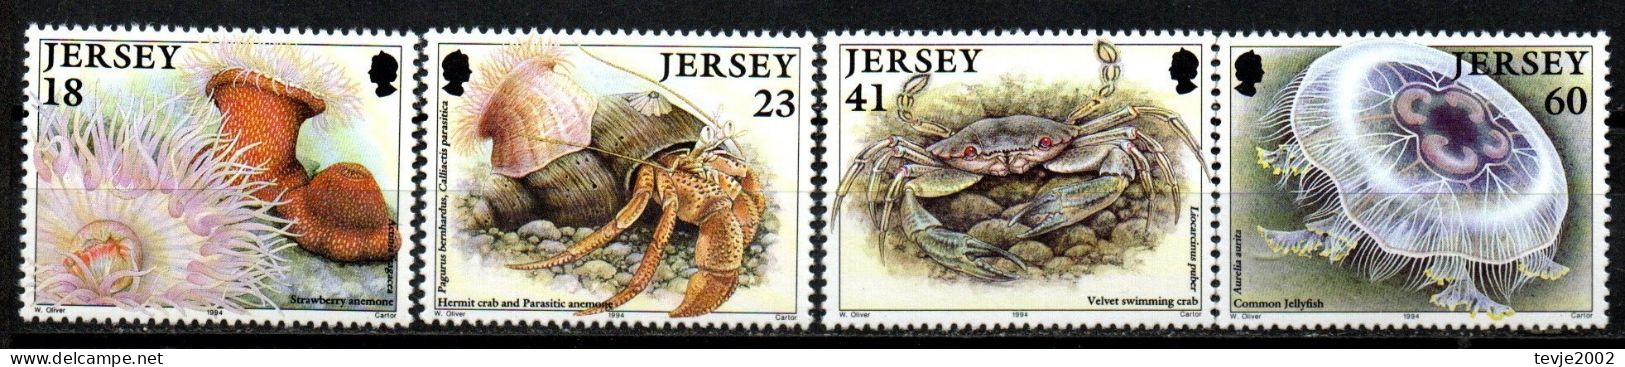 Jersey 1994 - Mi.Nr. 665 - 668 - Postfrisch MNH - Tiere Animals Krabben Crabs - Crustaceans